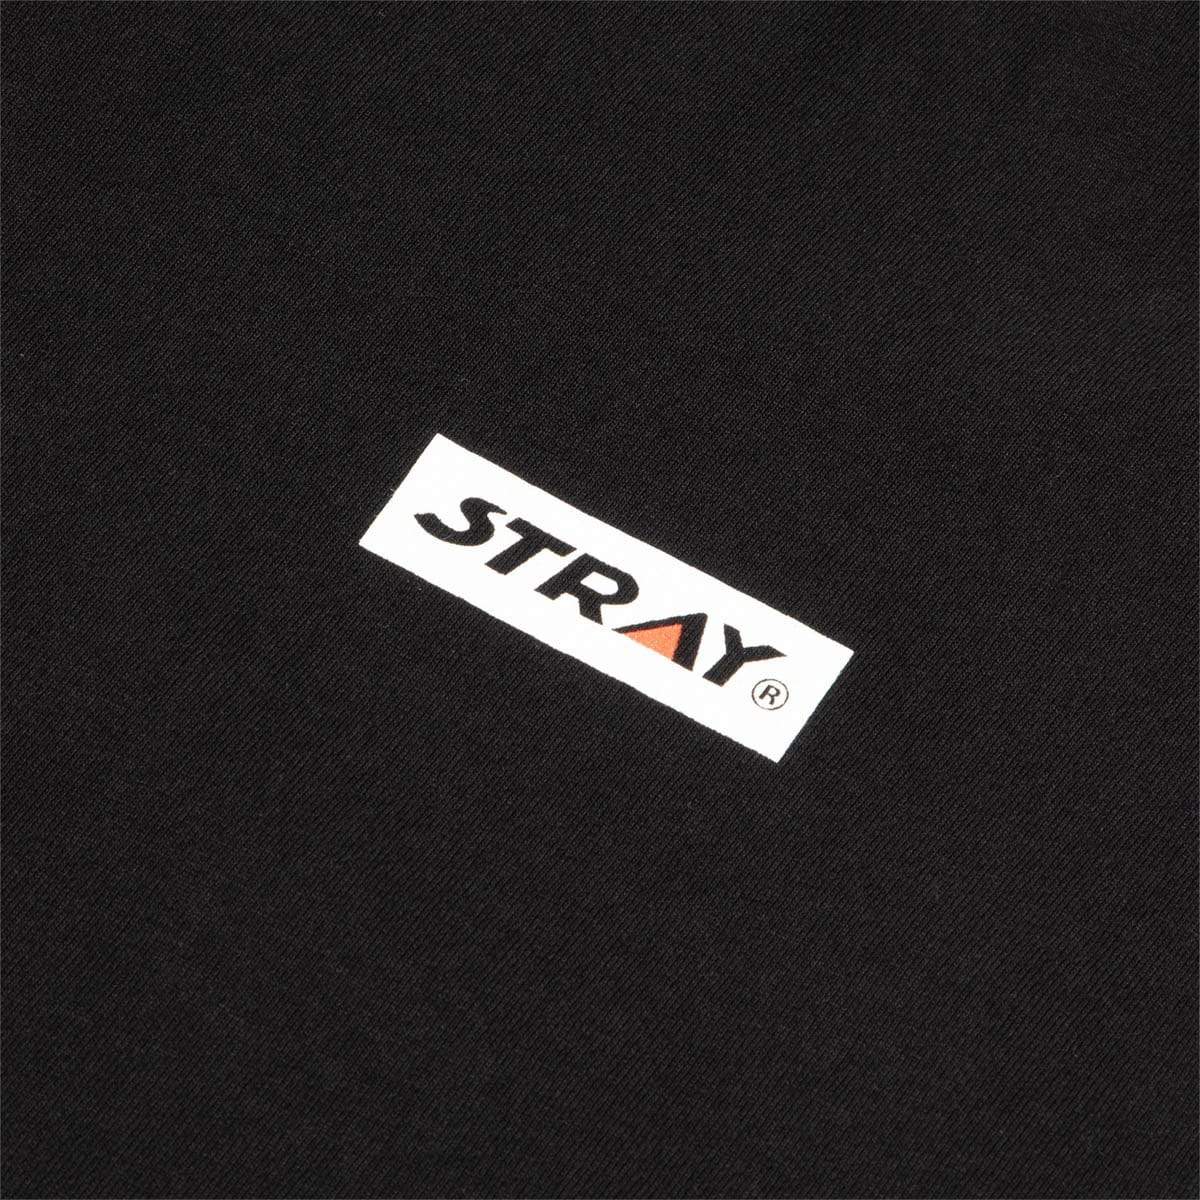 Stray Rats T-Shirts FANTASTIC STAR TEE